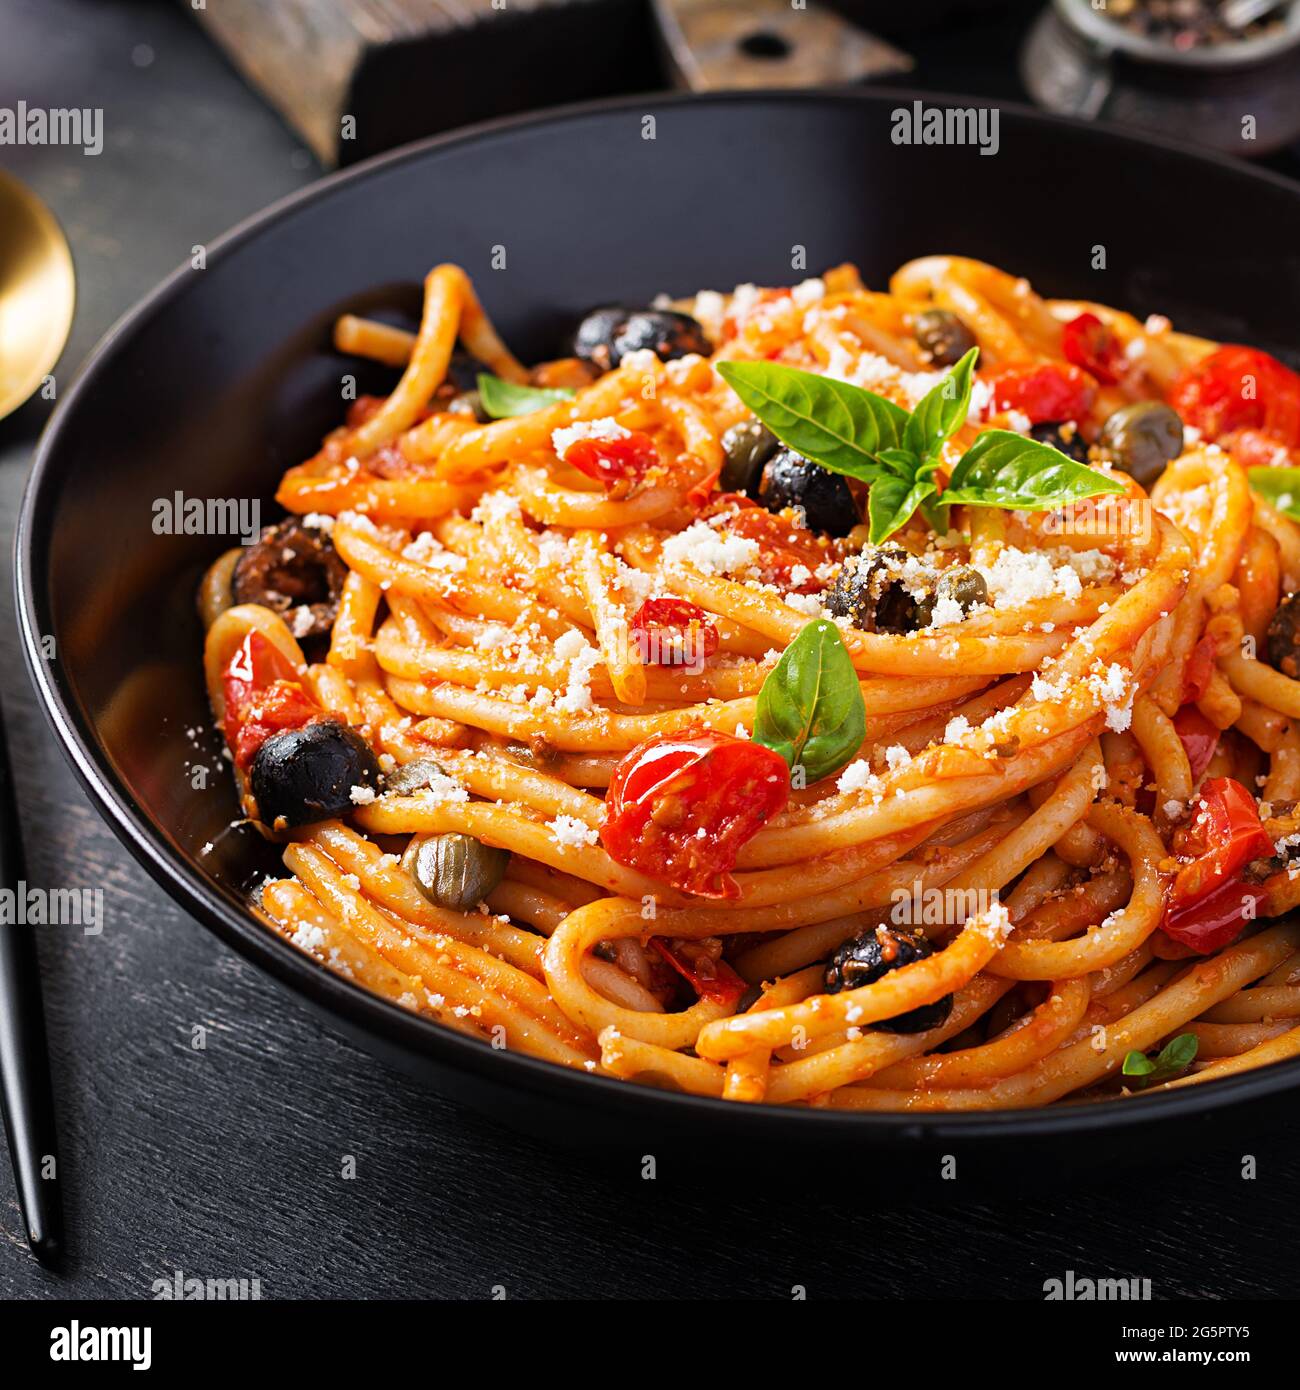 Spaghetti alla puttanesca – italienische Pasta-Gericht mit Tomaten, schwarzen Oliven, Kapern, Sardellen und Basilikum Stockfoto